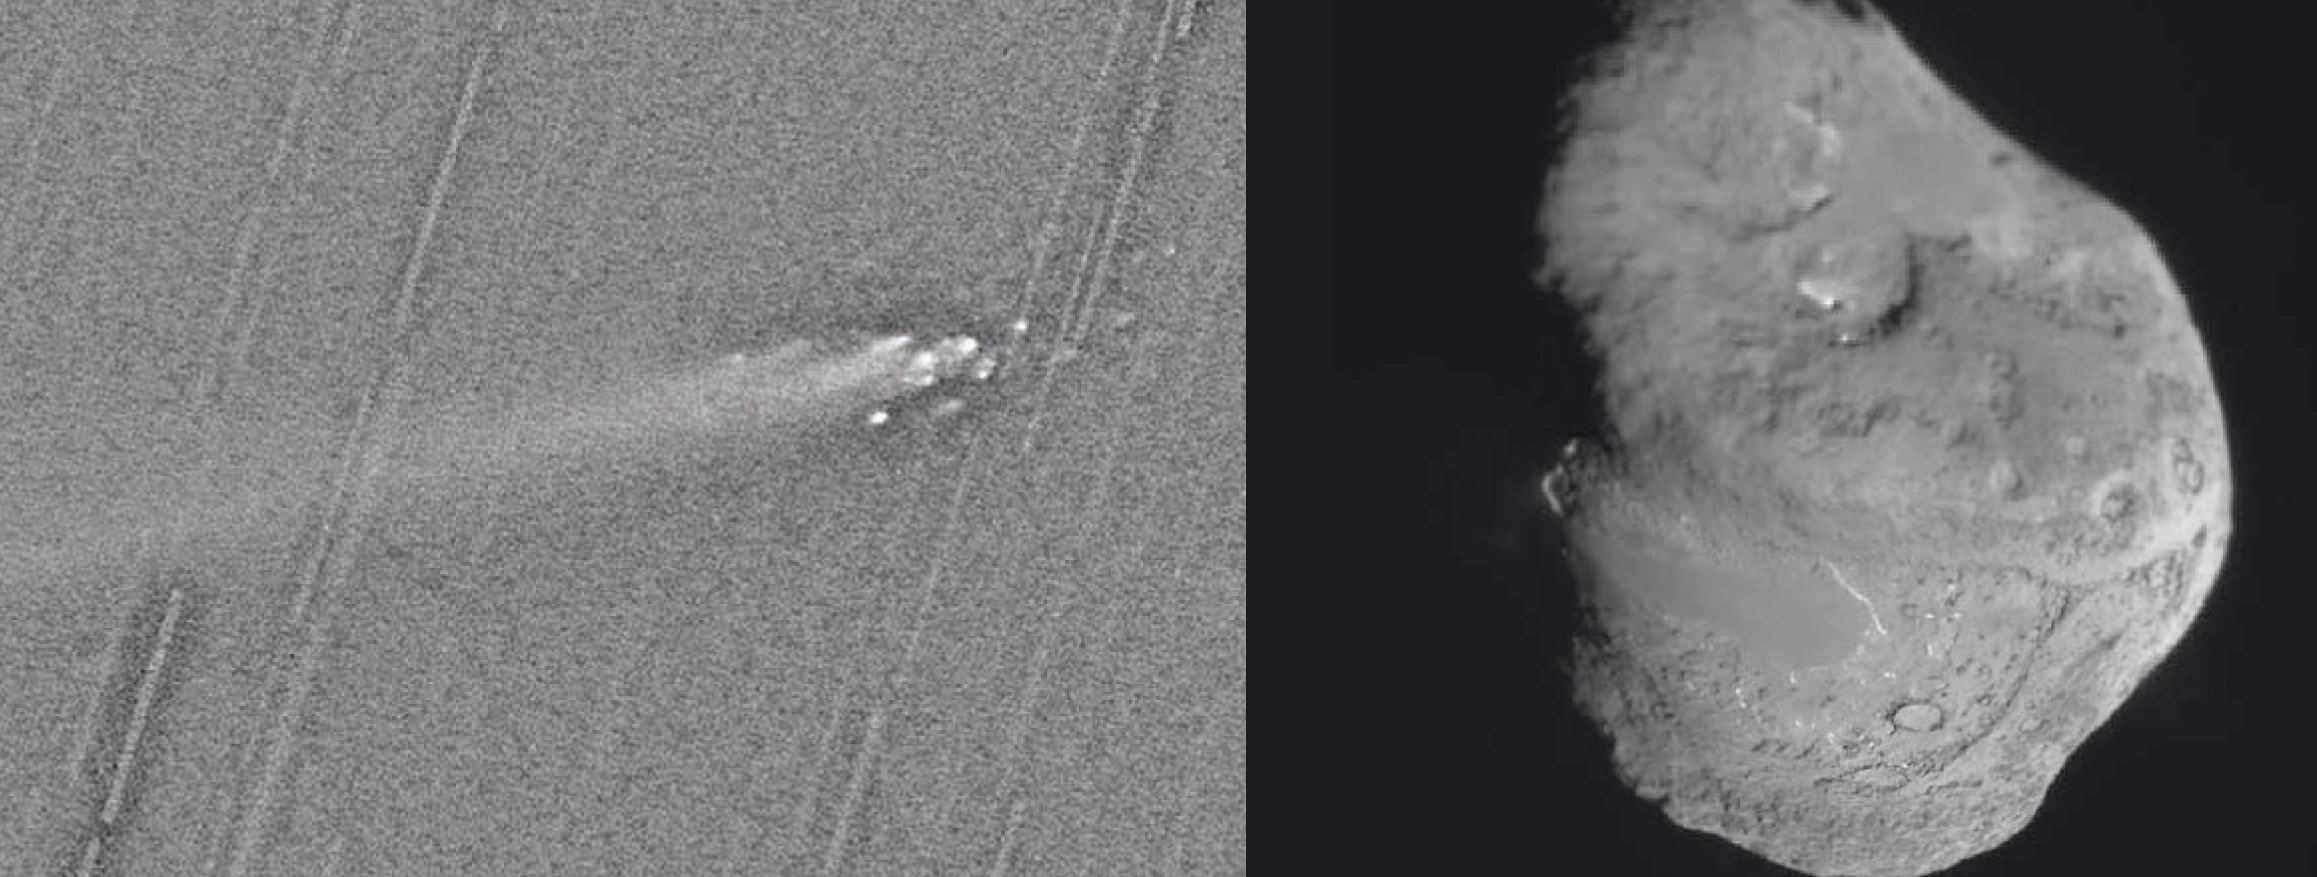 Izquierda: fragmentación del núcleo del cometa C/1999 S4 (Linear)(ESO). Derecha: imagen del núcleo del cometaTempel 1 fotografiado por la sonda Deep Impact (NASA)